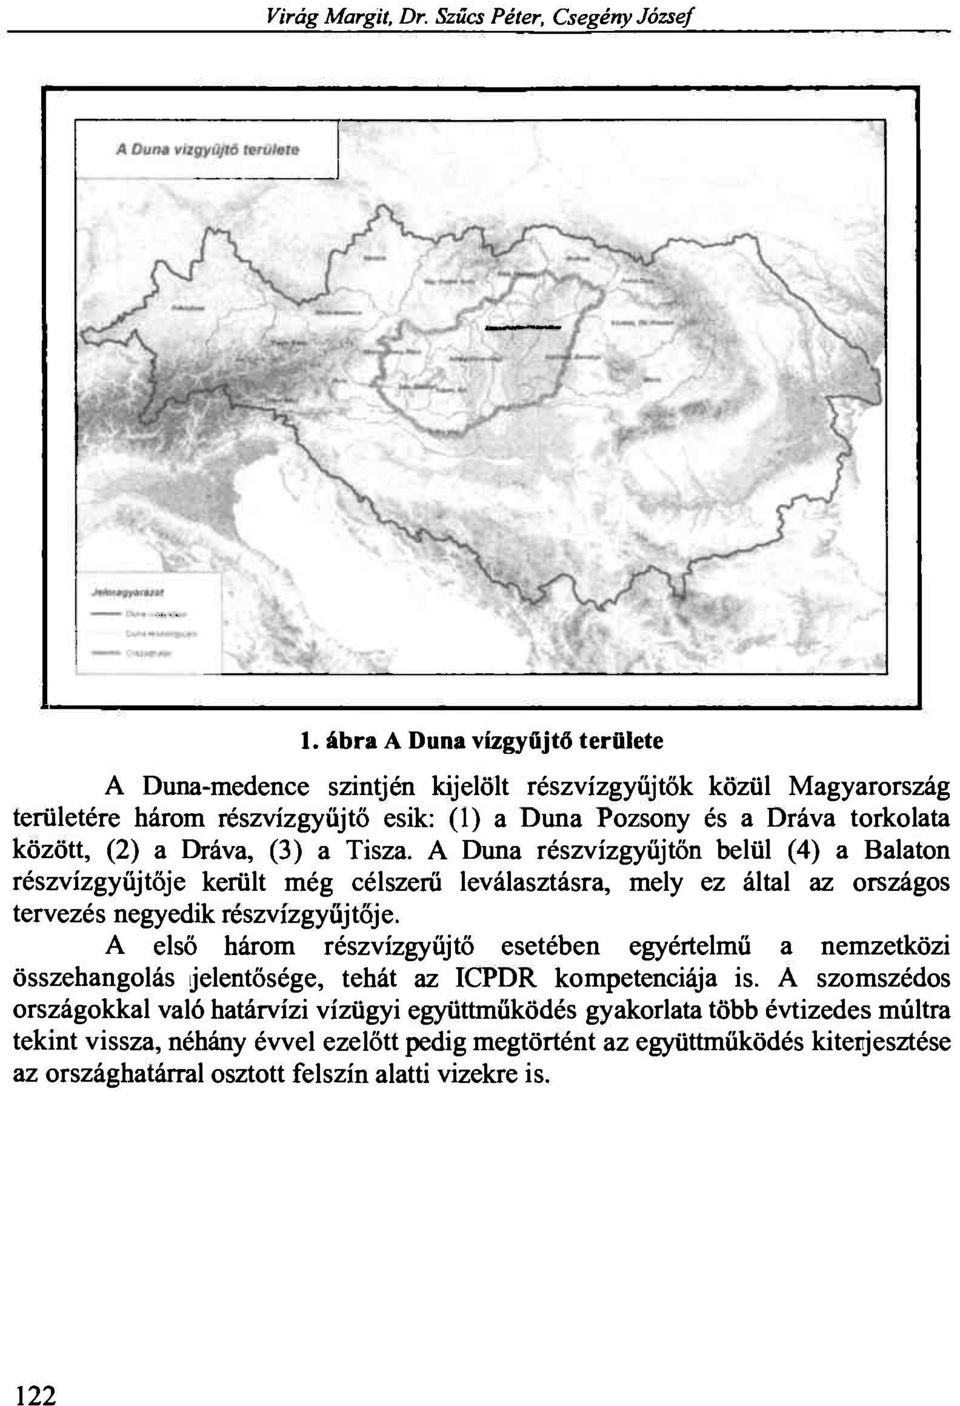 Dráva, (3) a Tisza. A Duna részvízgyűjtőn belül (4) a Balaton részvízgyűjtője került még célszerű leválasztásra, mely ez által az országos tervezés negyedik részvízgyűjtője.